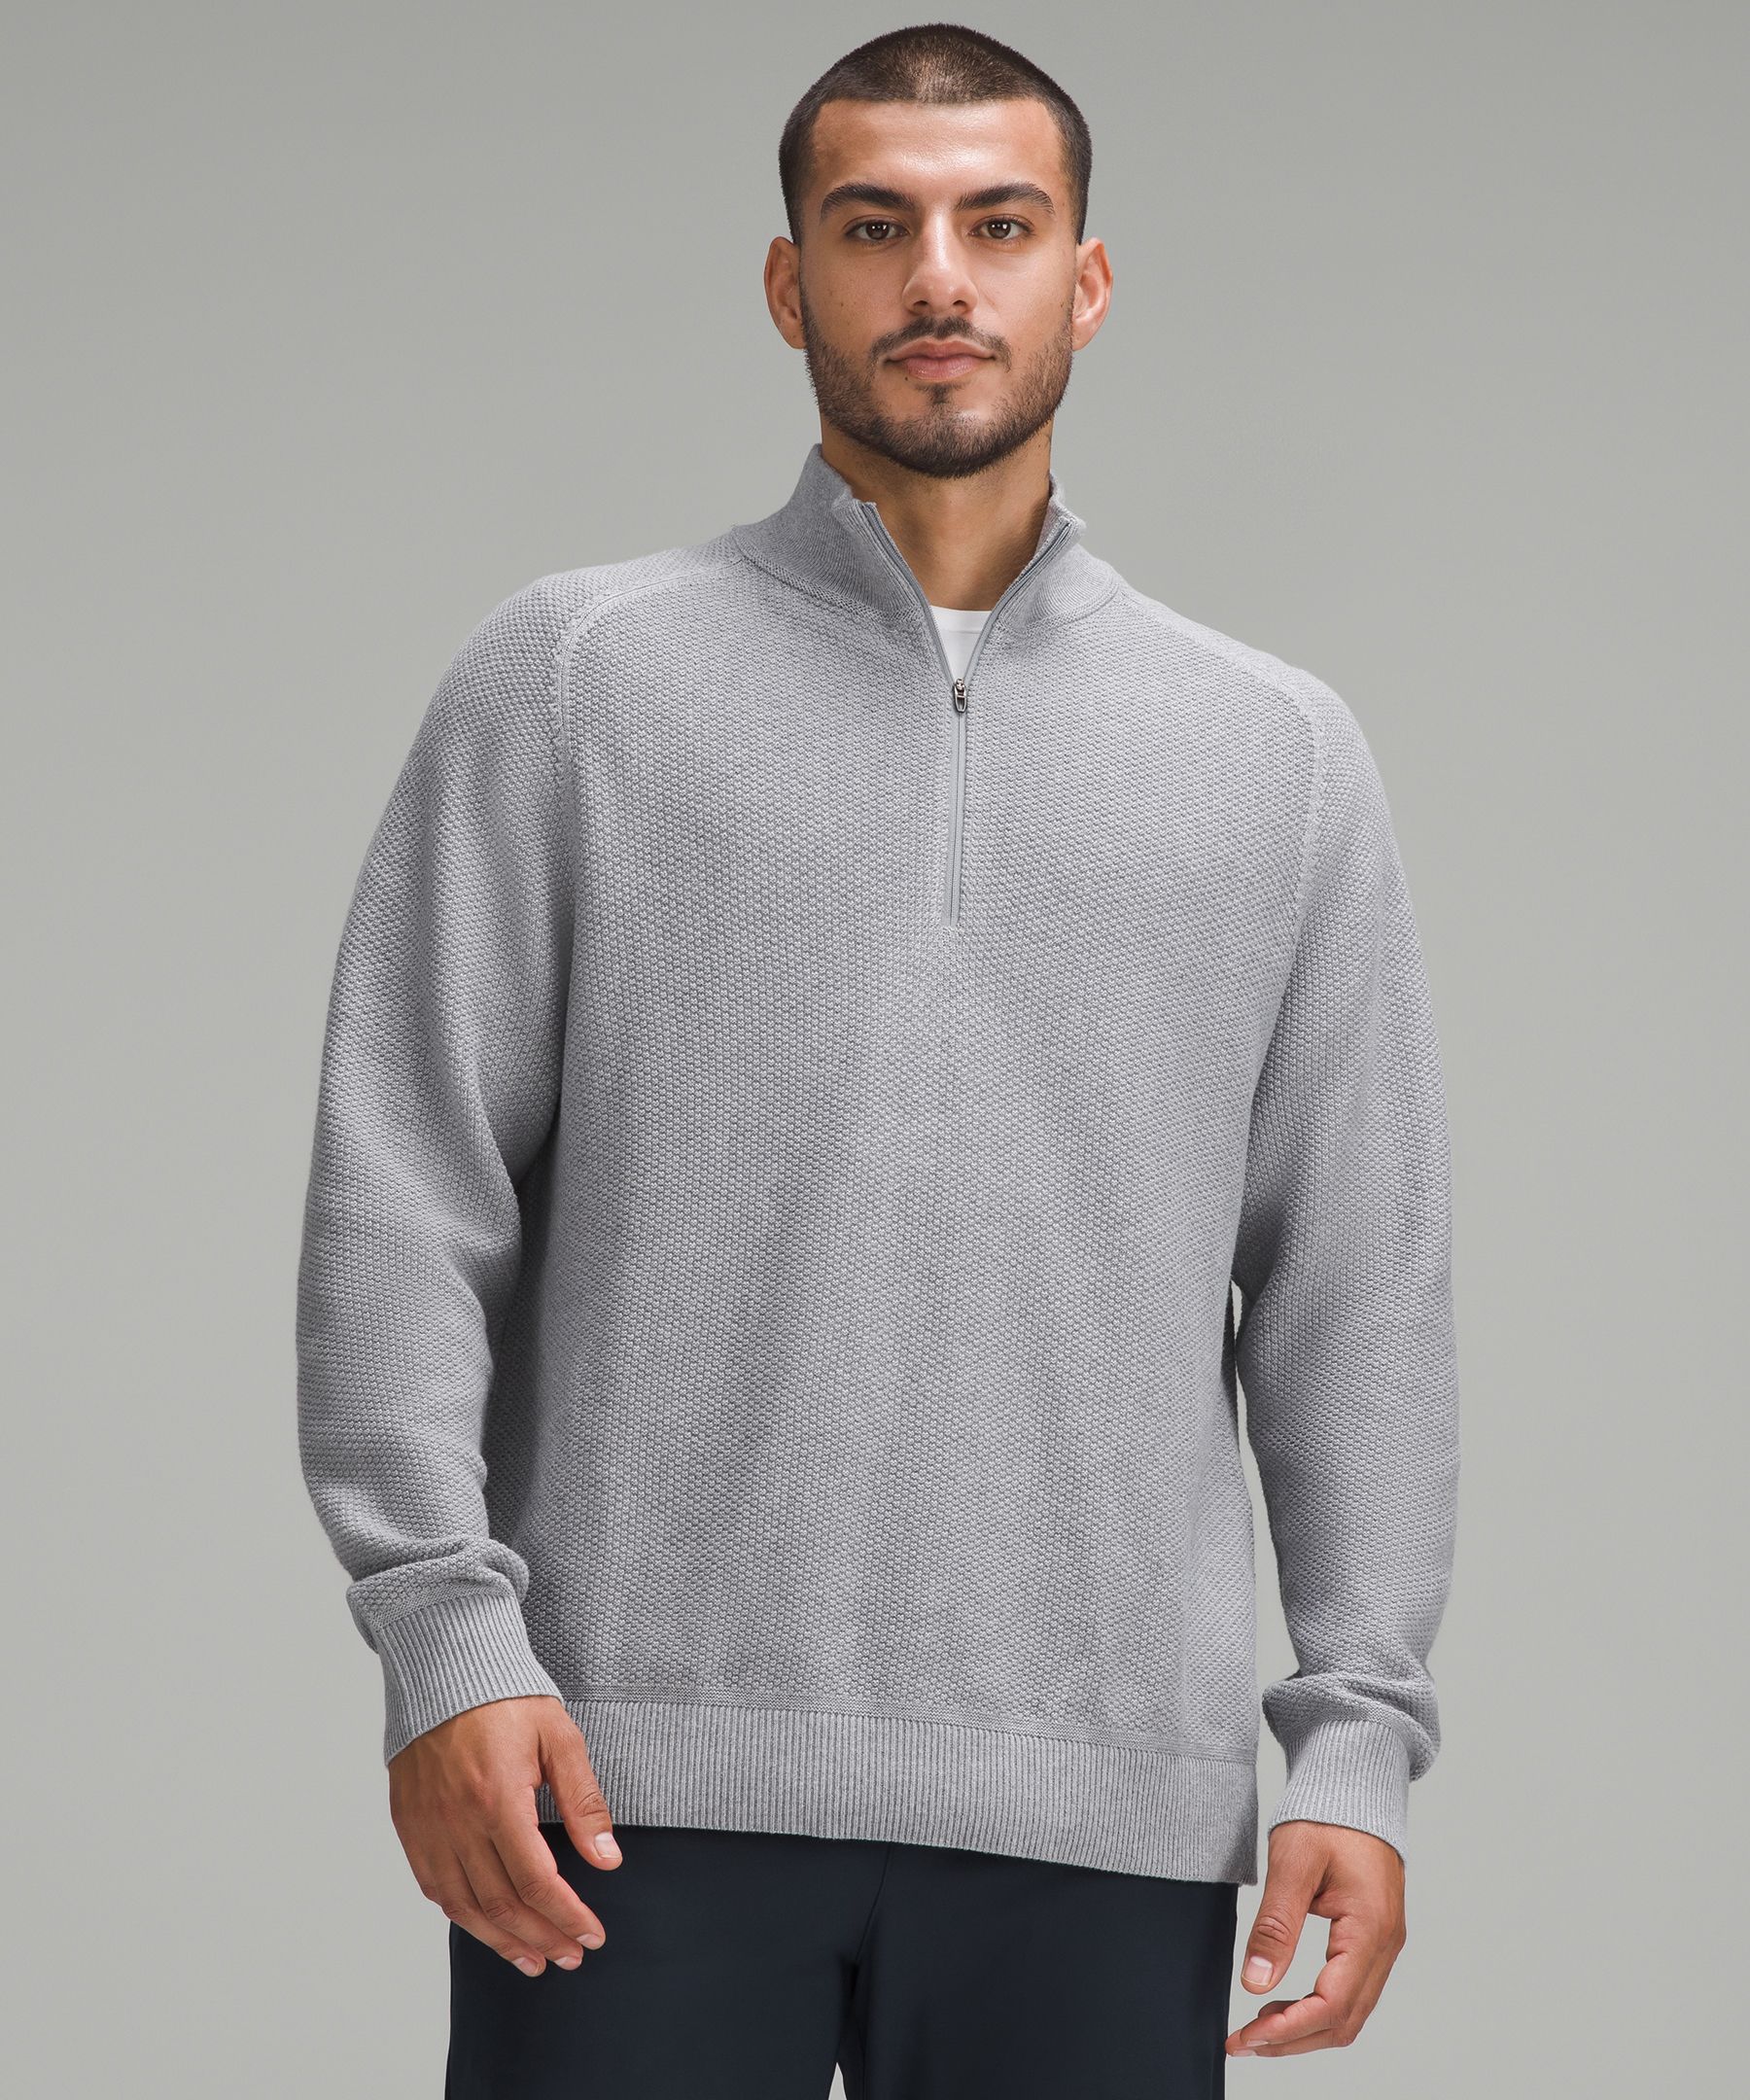 Lululemon Pullover Sweatshirt Womens 8 Gray Cotten Knit Side Zip Pocket